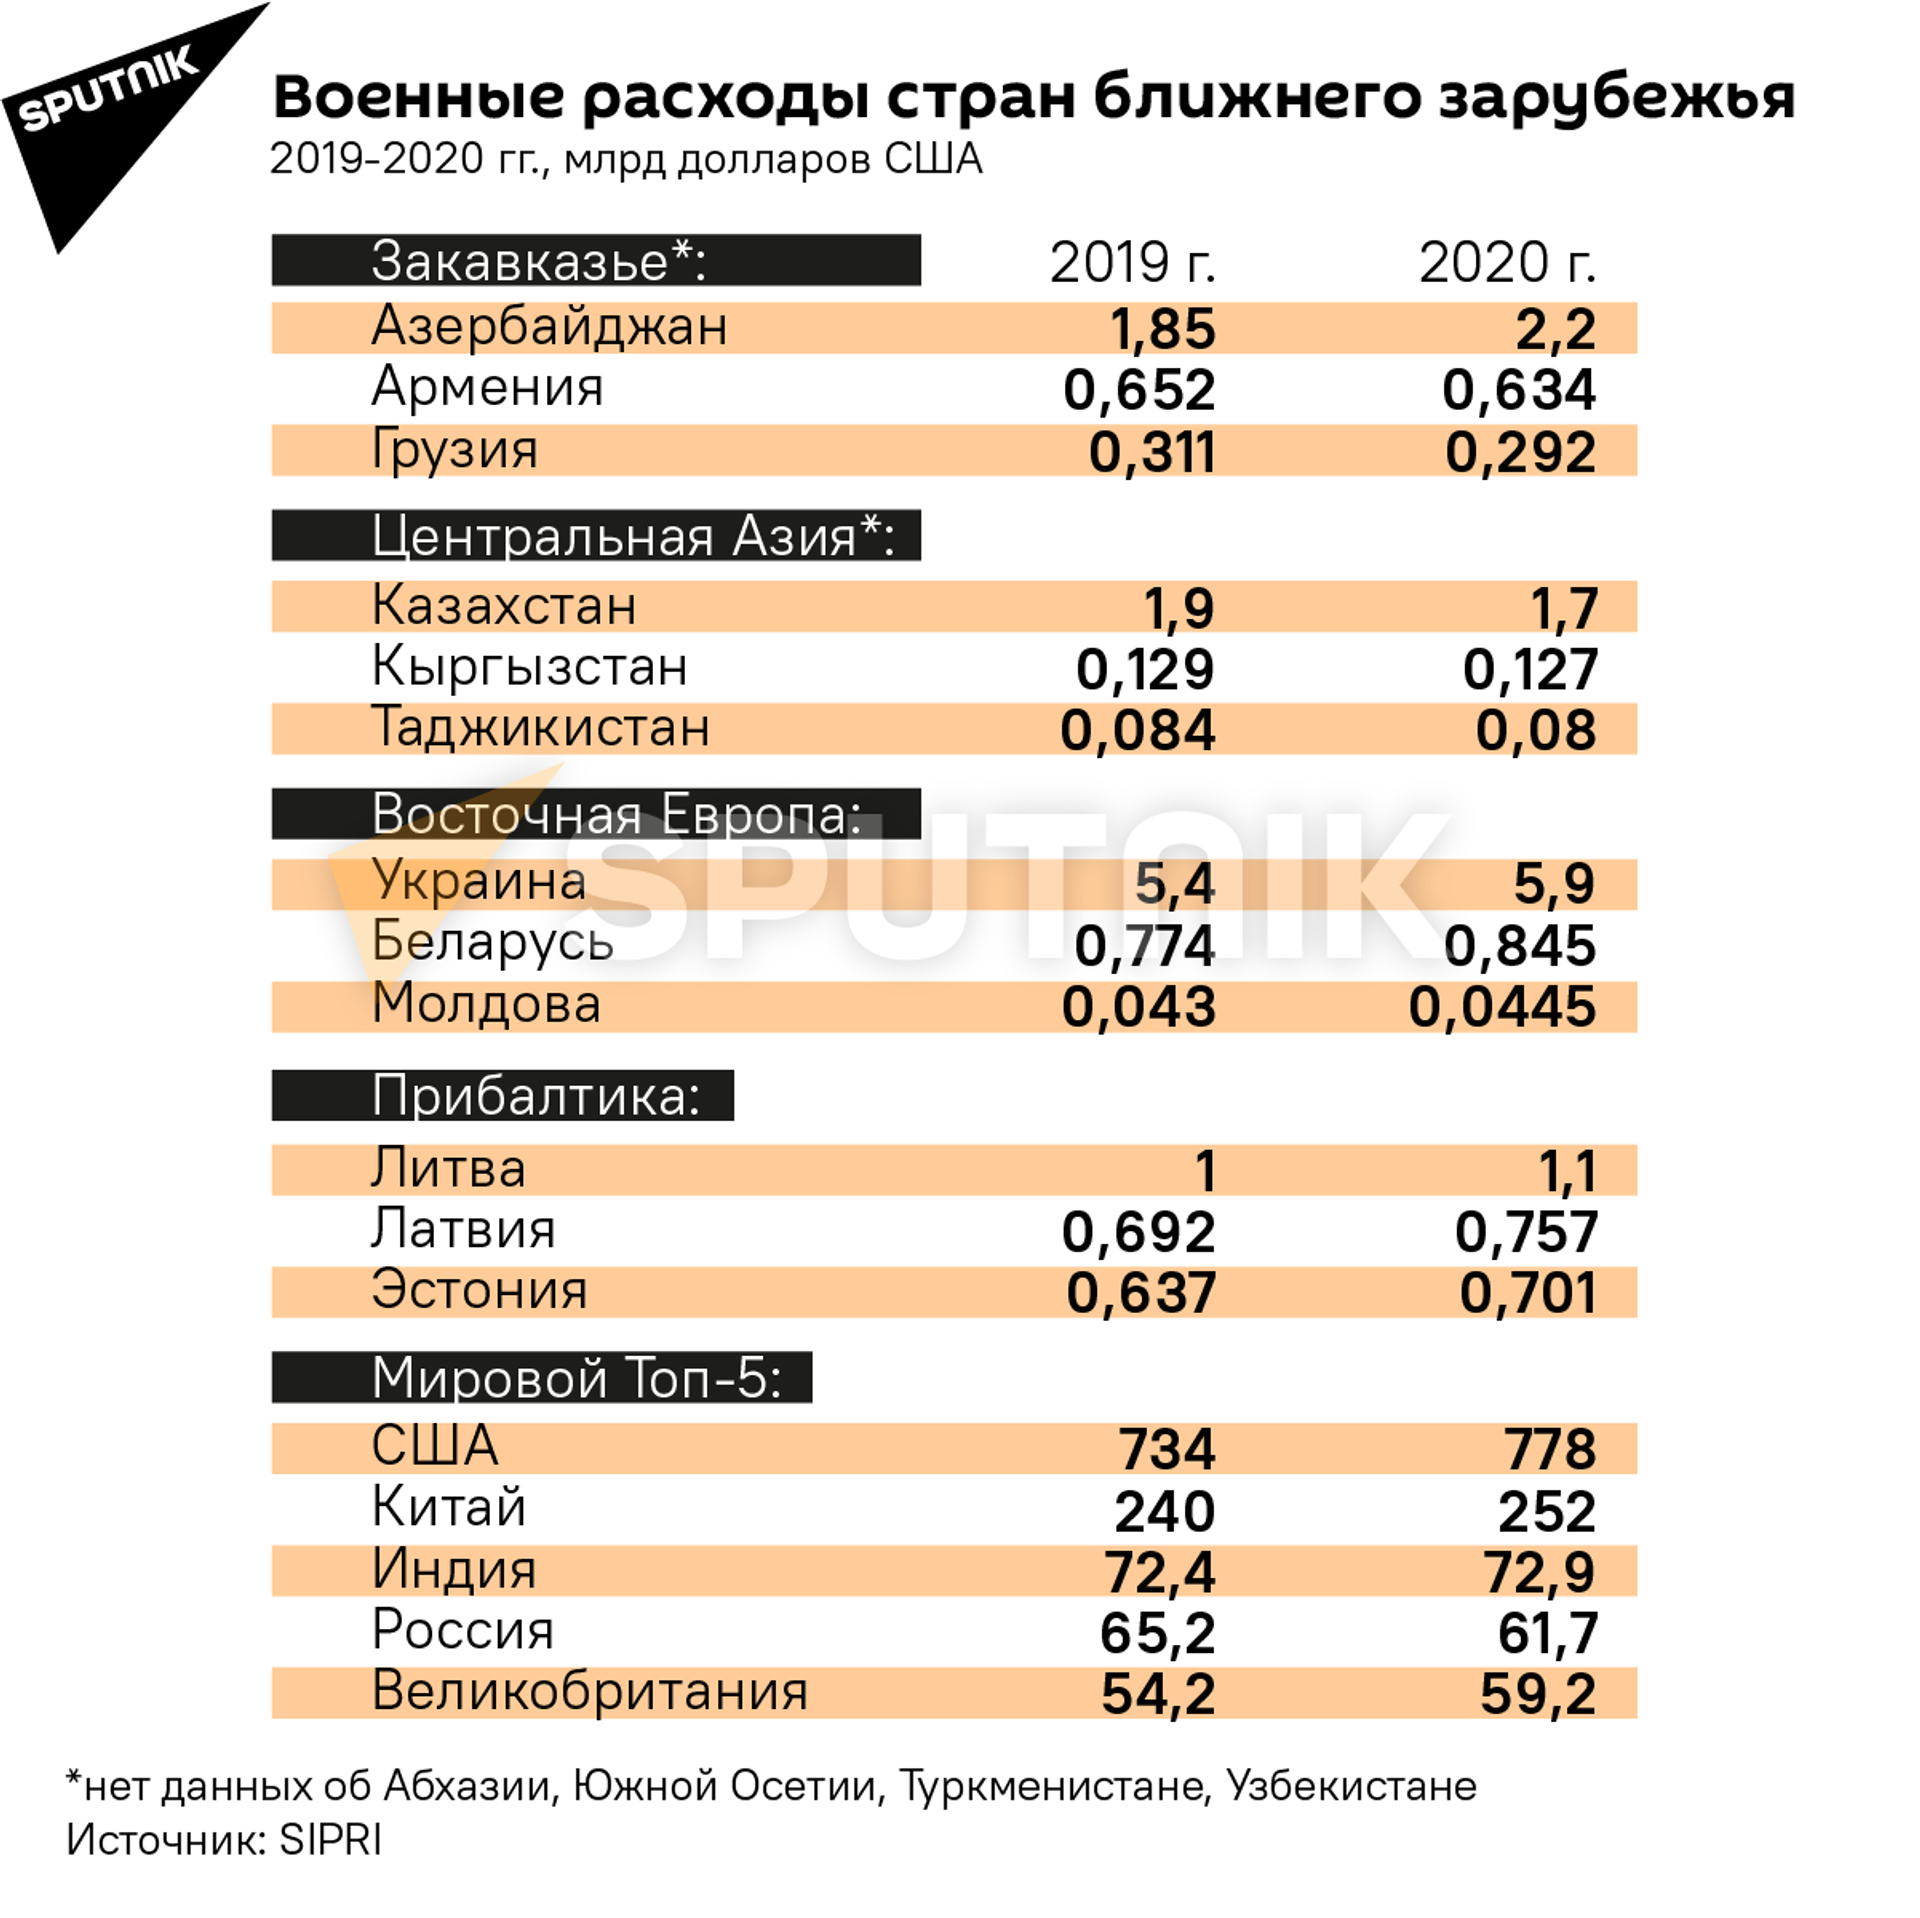 Доллары милитаризации: какие страны повышают военные расходы? - Sputnik Беларусь, 1920, 26.04.2021